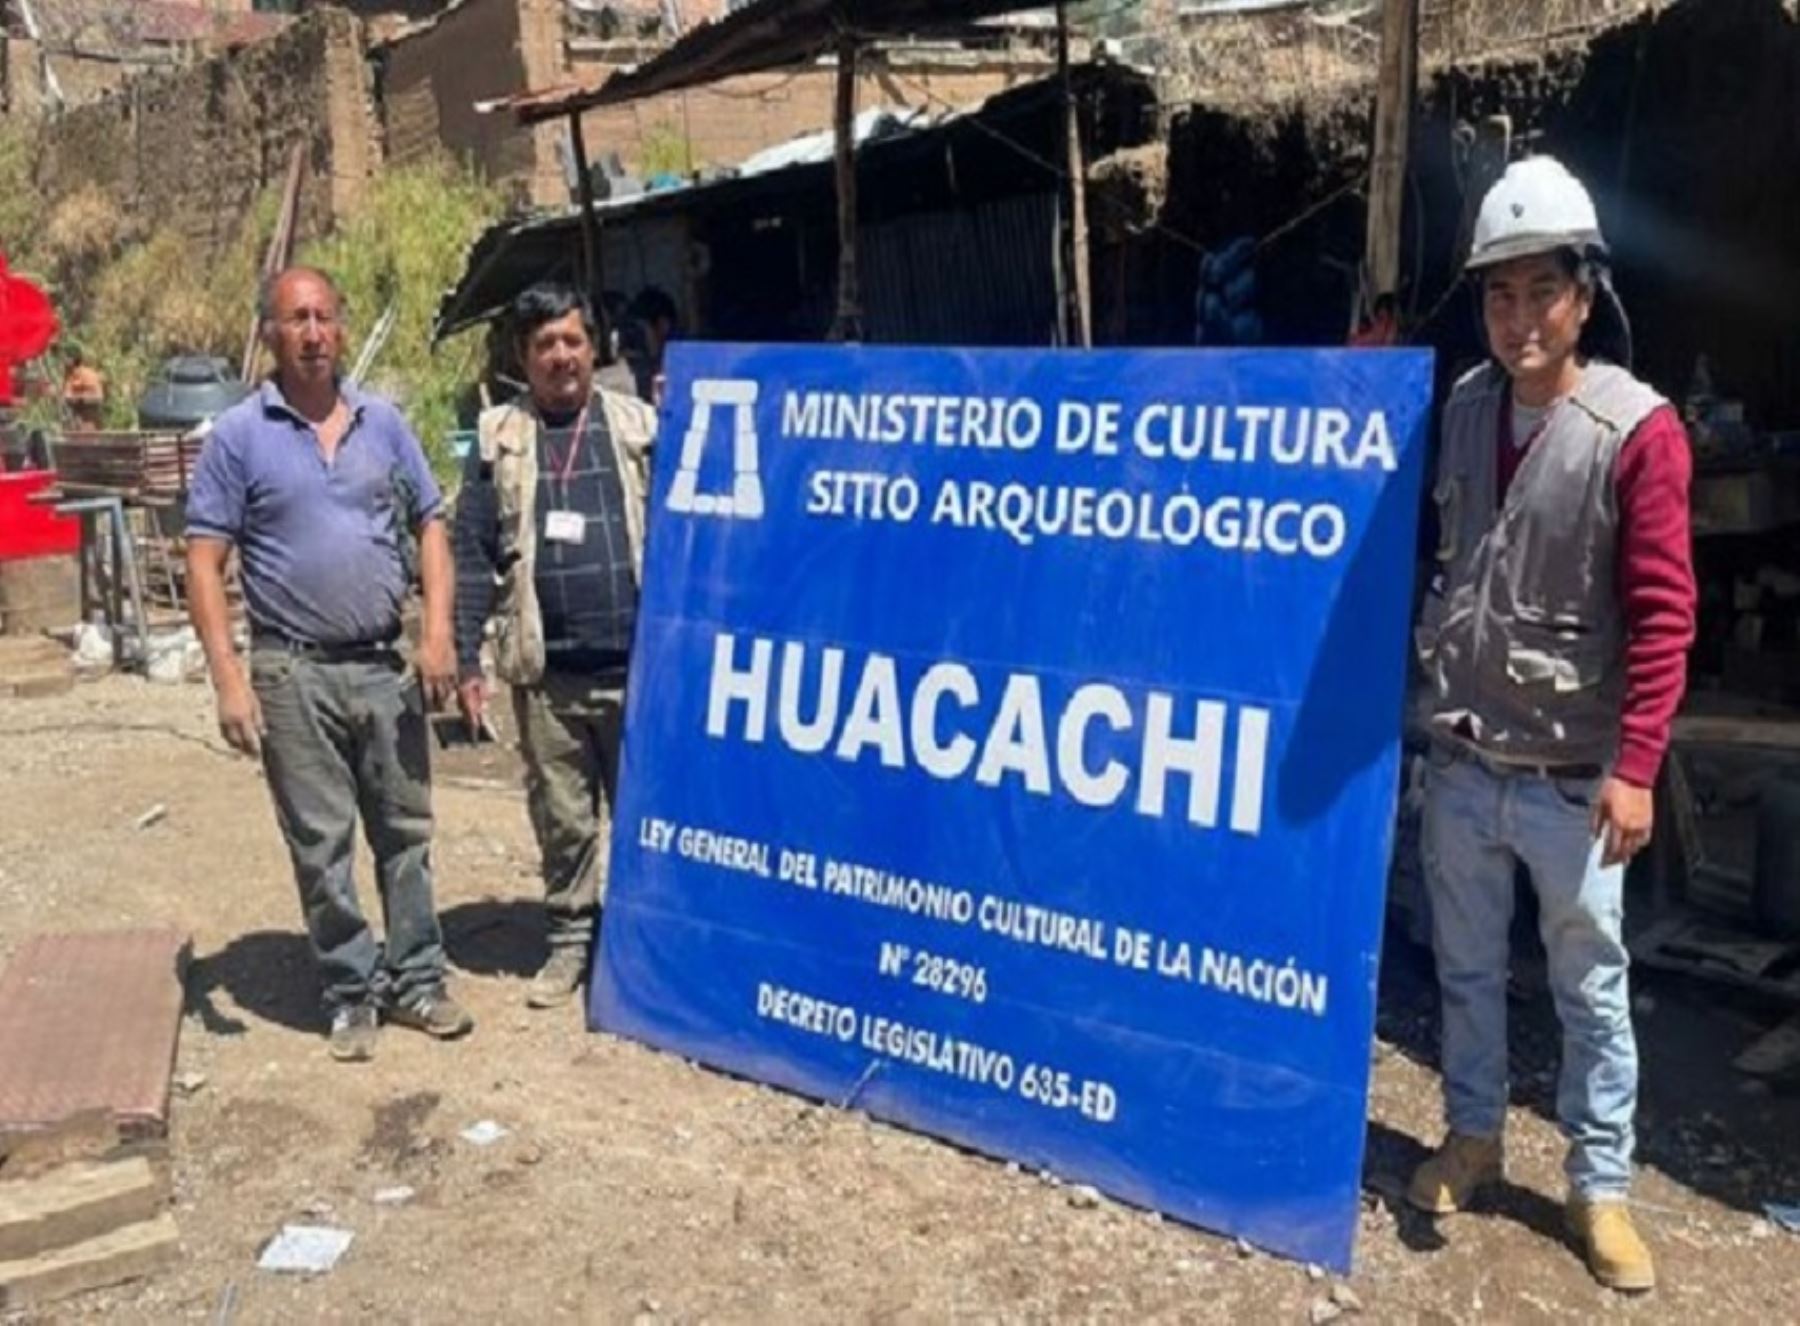 El Ministerio de Cultura dispuso la protección provisional del sitio arqueológico Huacachi, ubicado en la región Pasco. ANDINA/Difusión